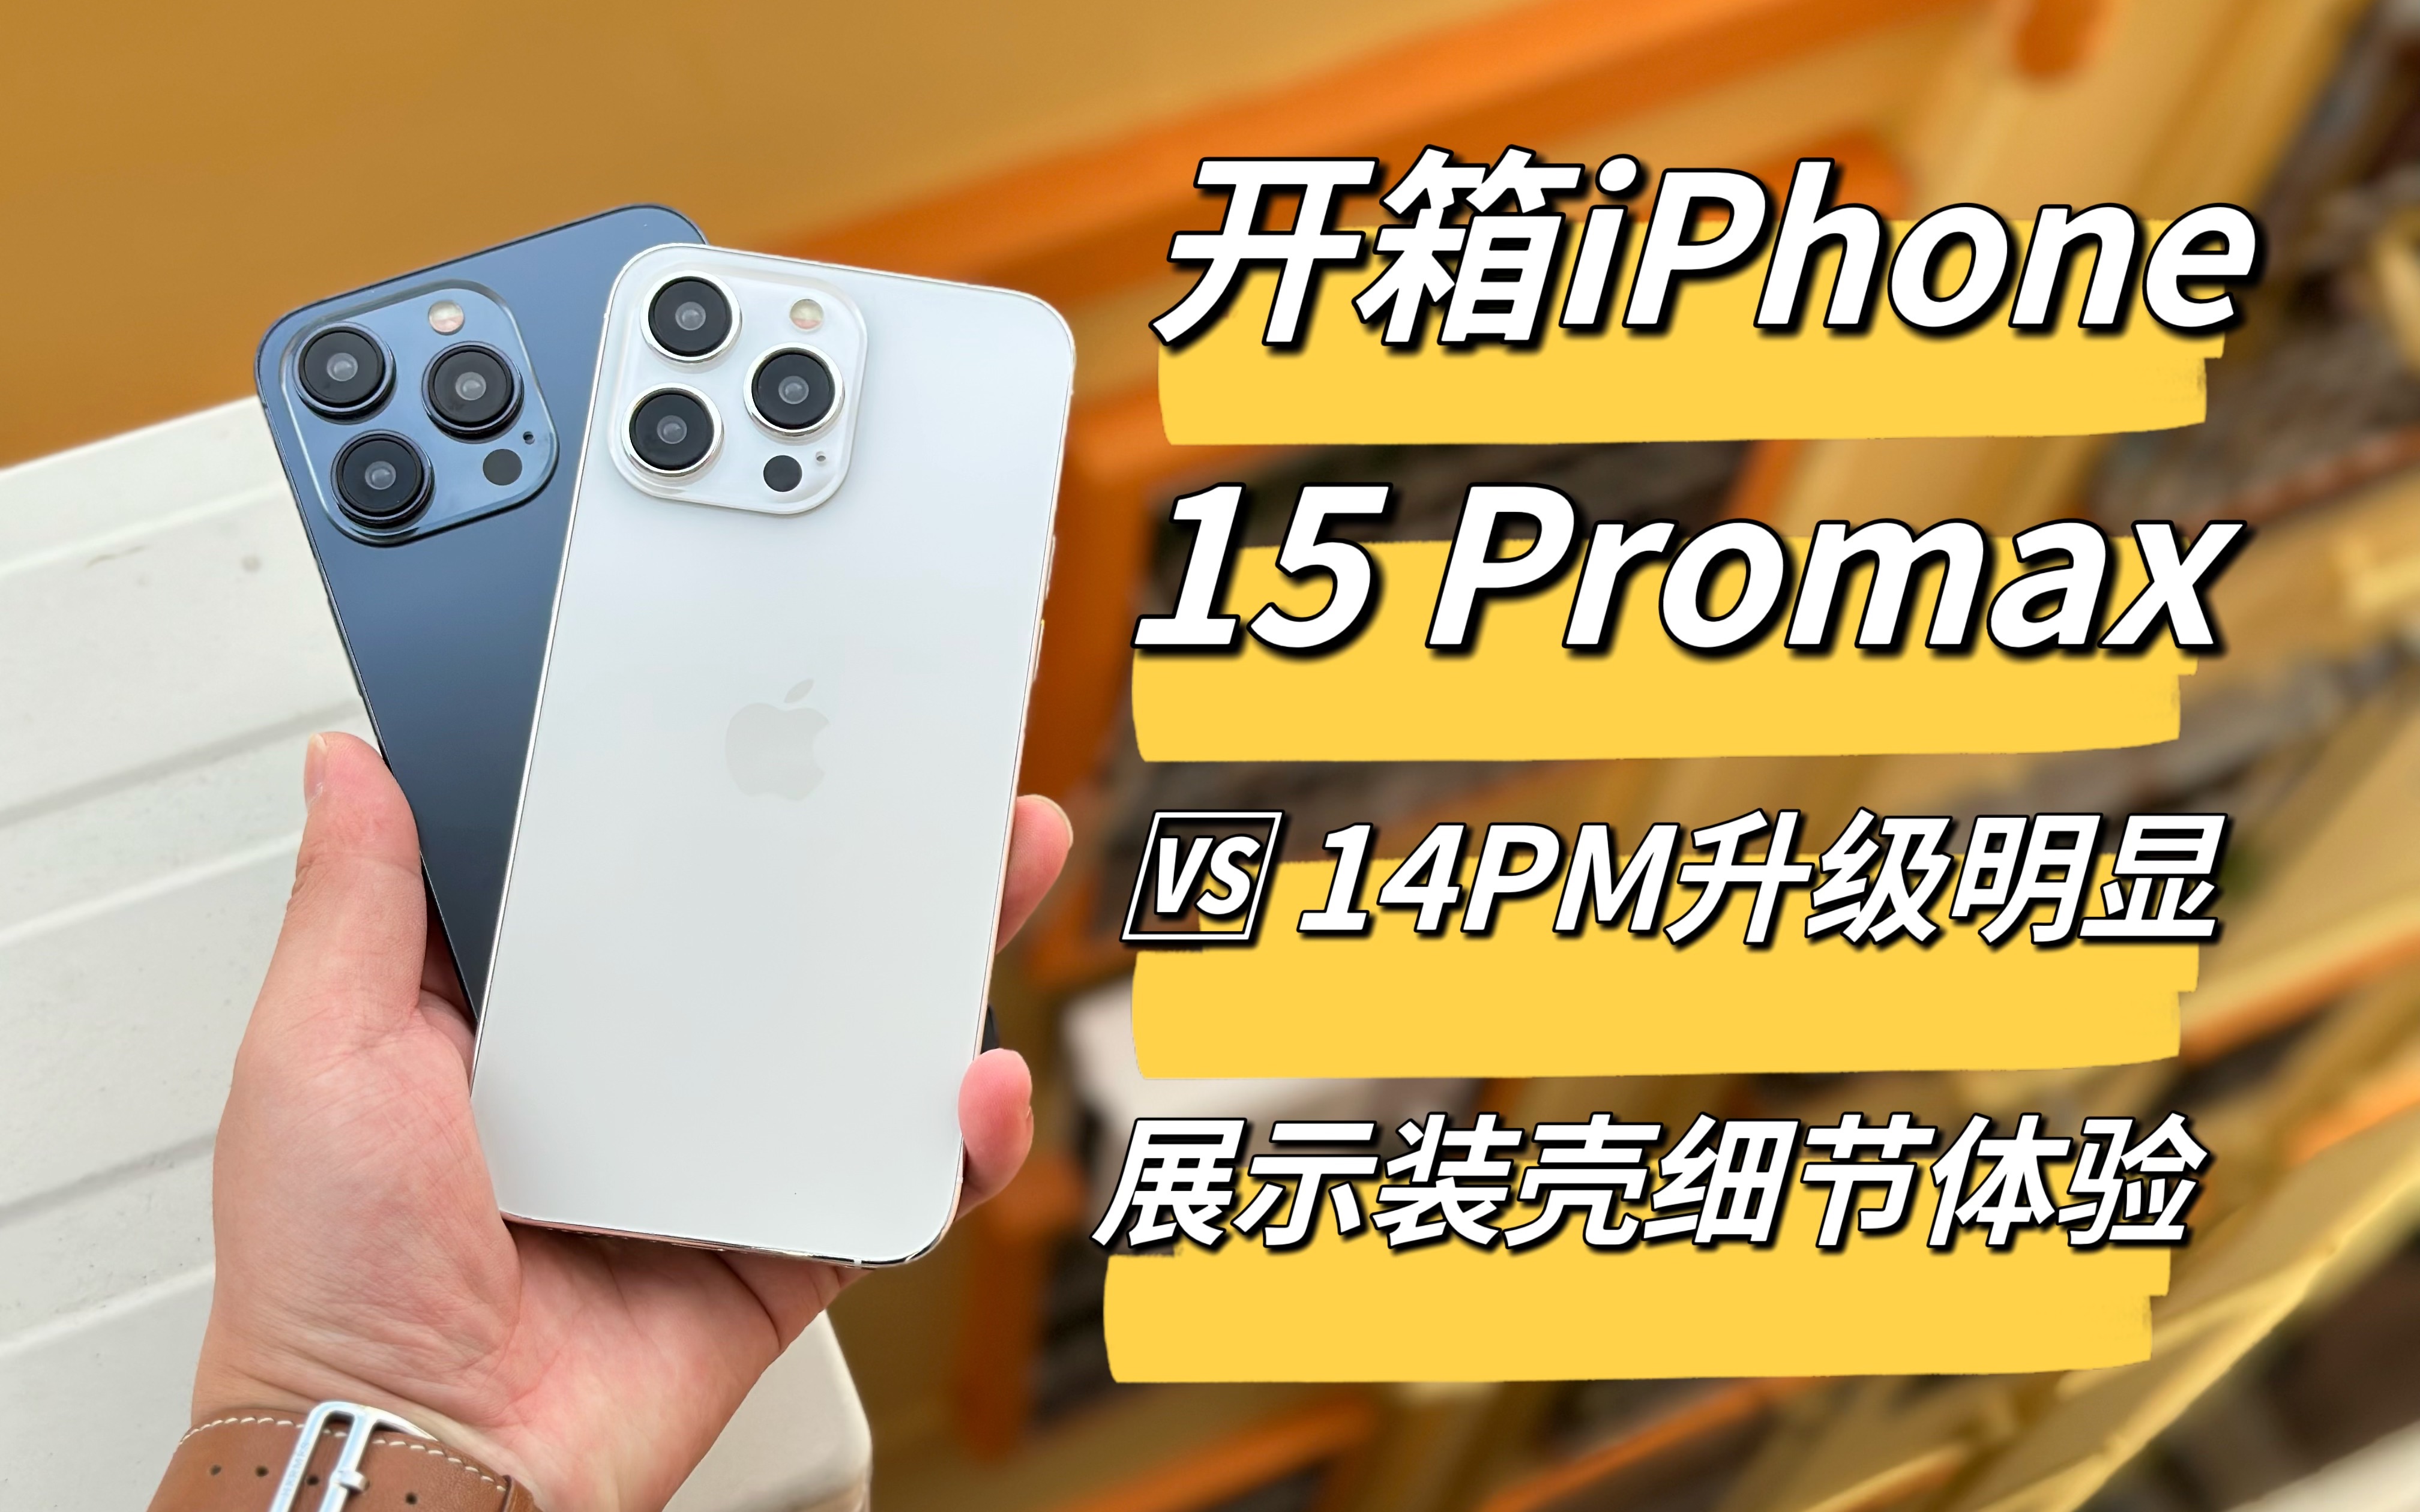 拿到了即将发布的iphone15promax模型机,对比14promax真机有哪些升级?